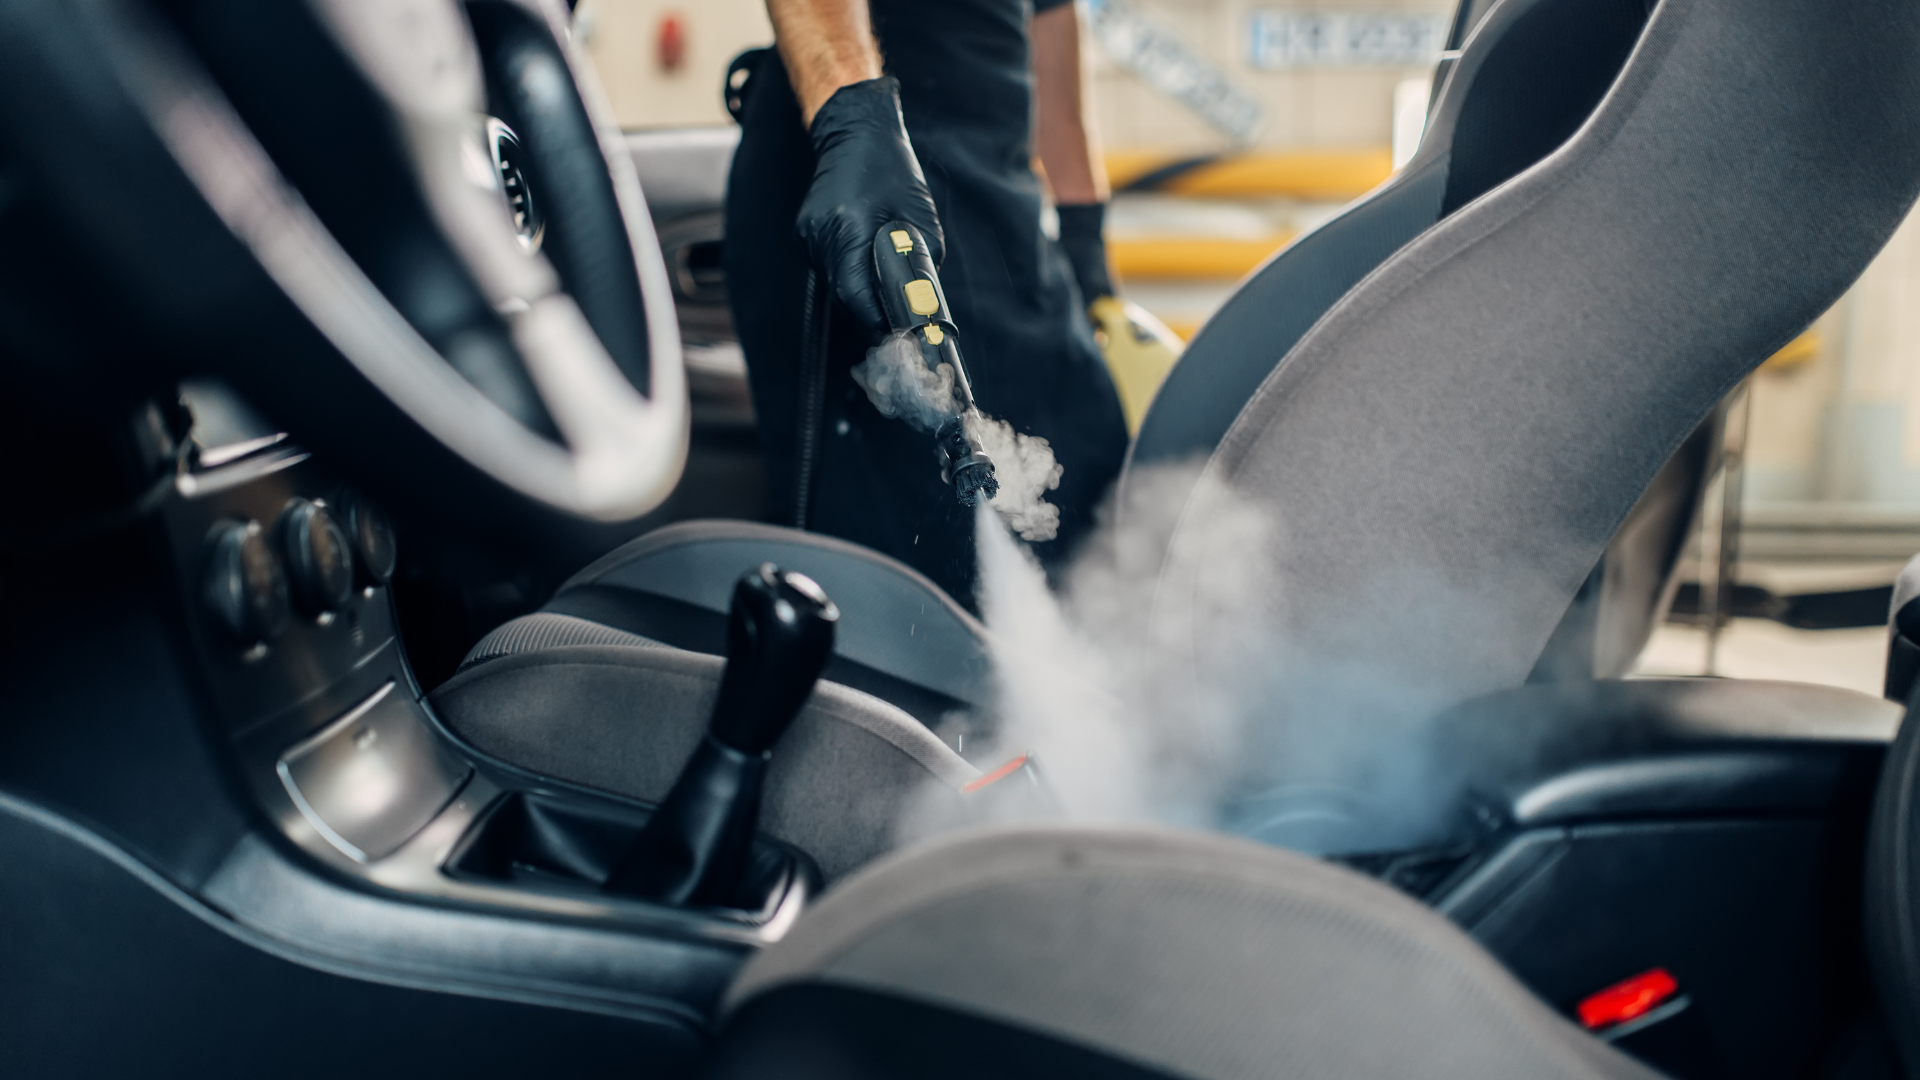 Lavaggio auto a vapore: come funziona, costi e vantaggi